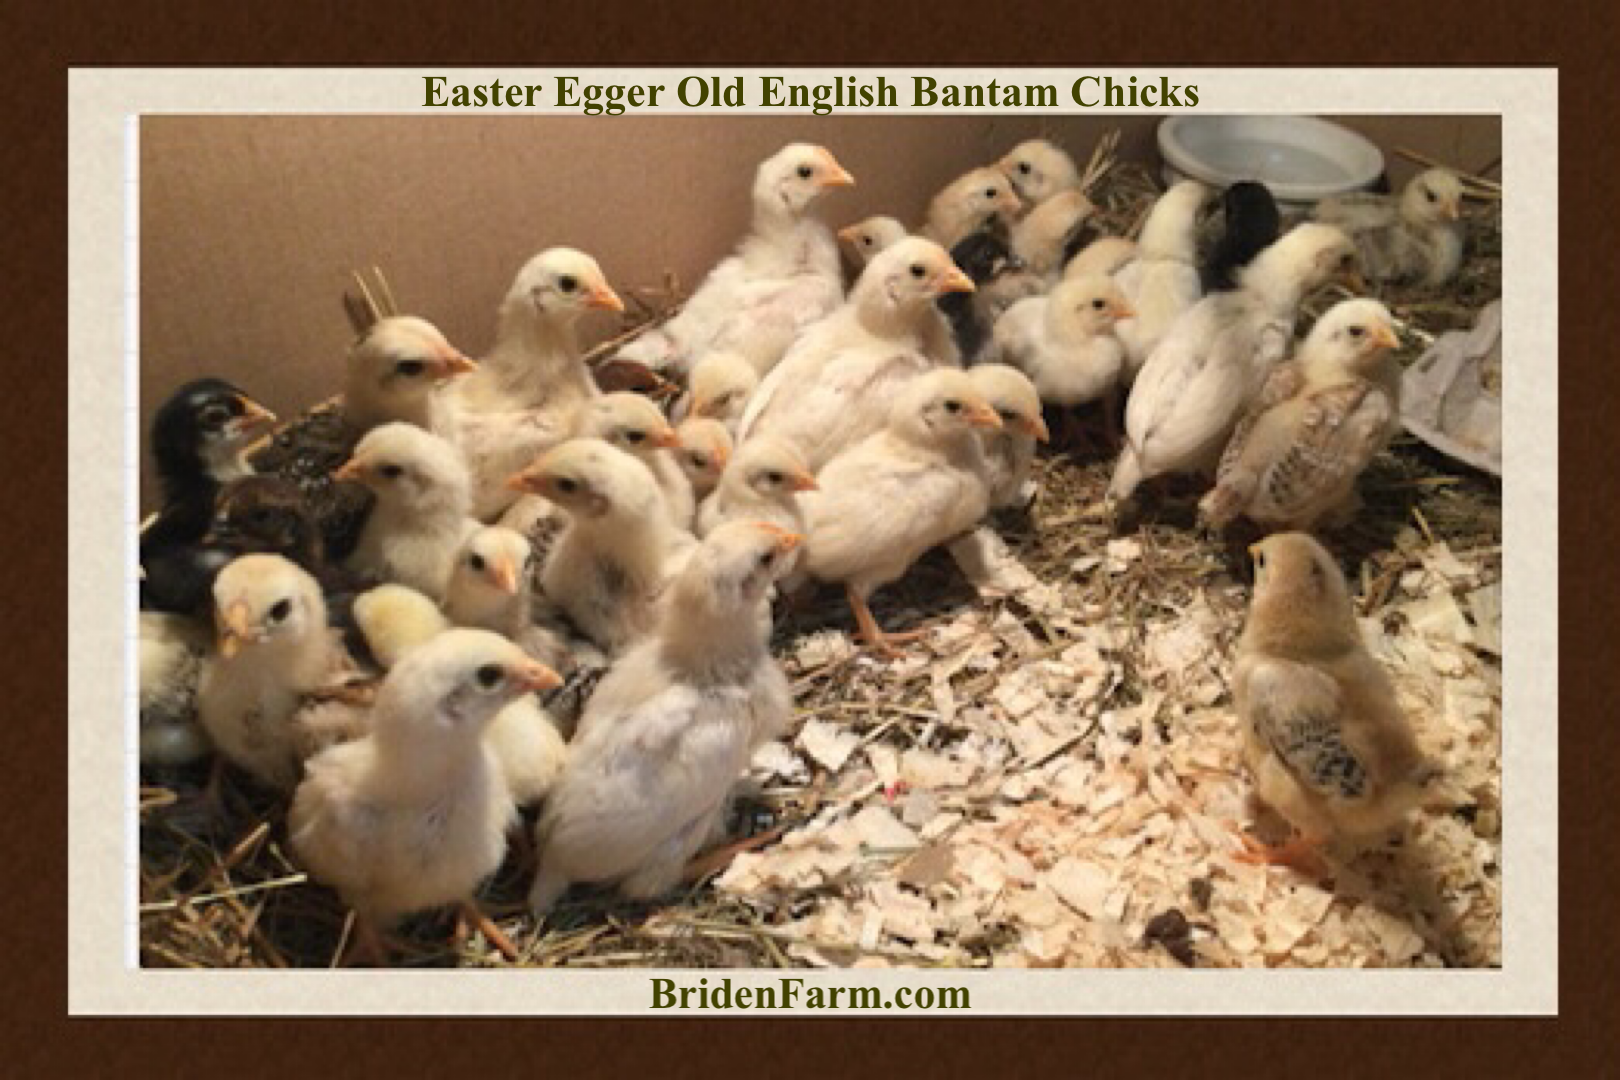 Easter Egger Old English Bantam Chicks